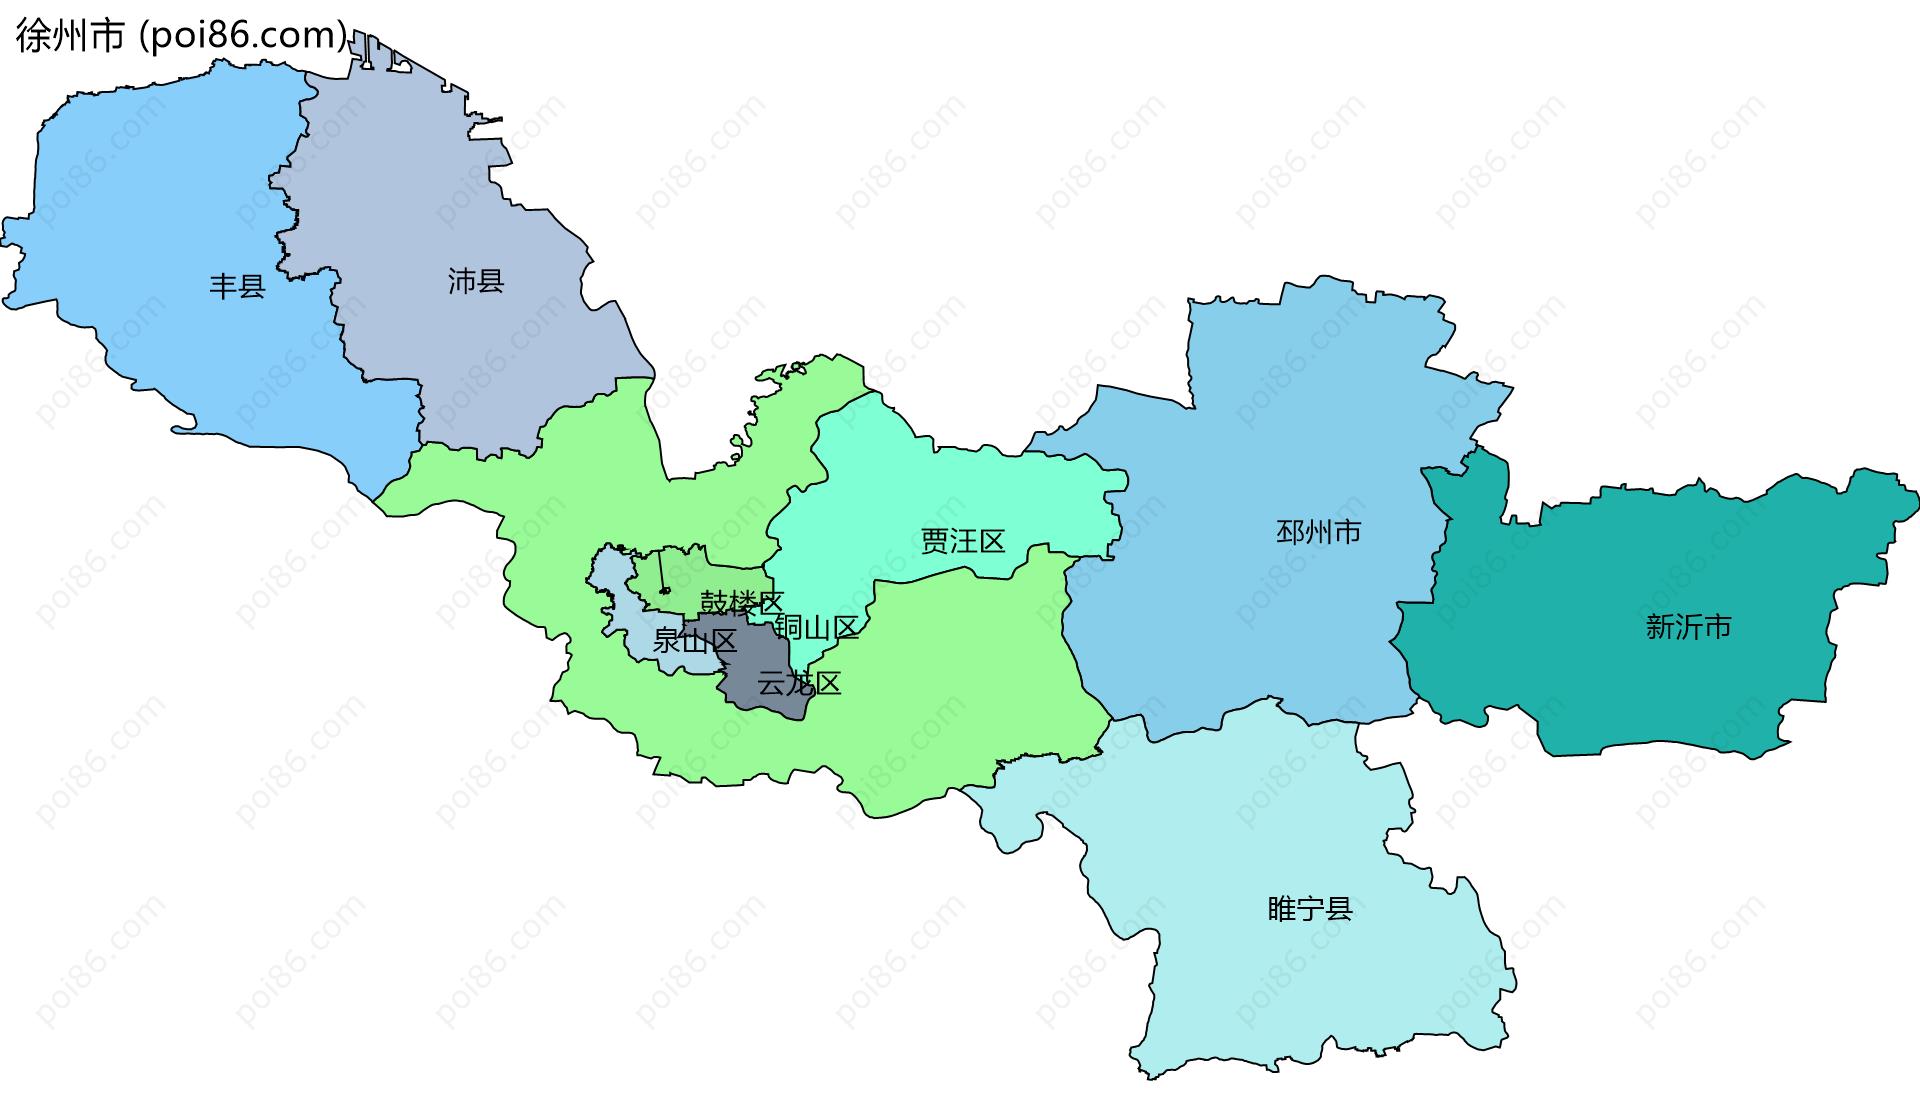 徐州市边界地图